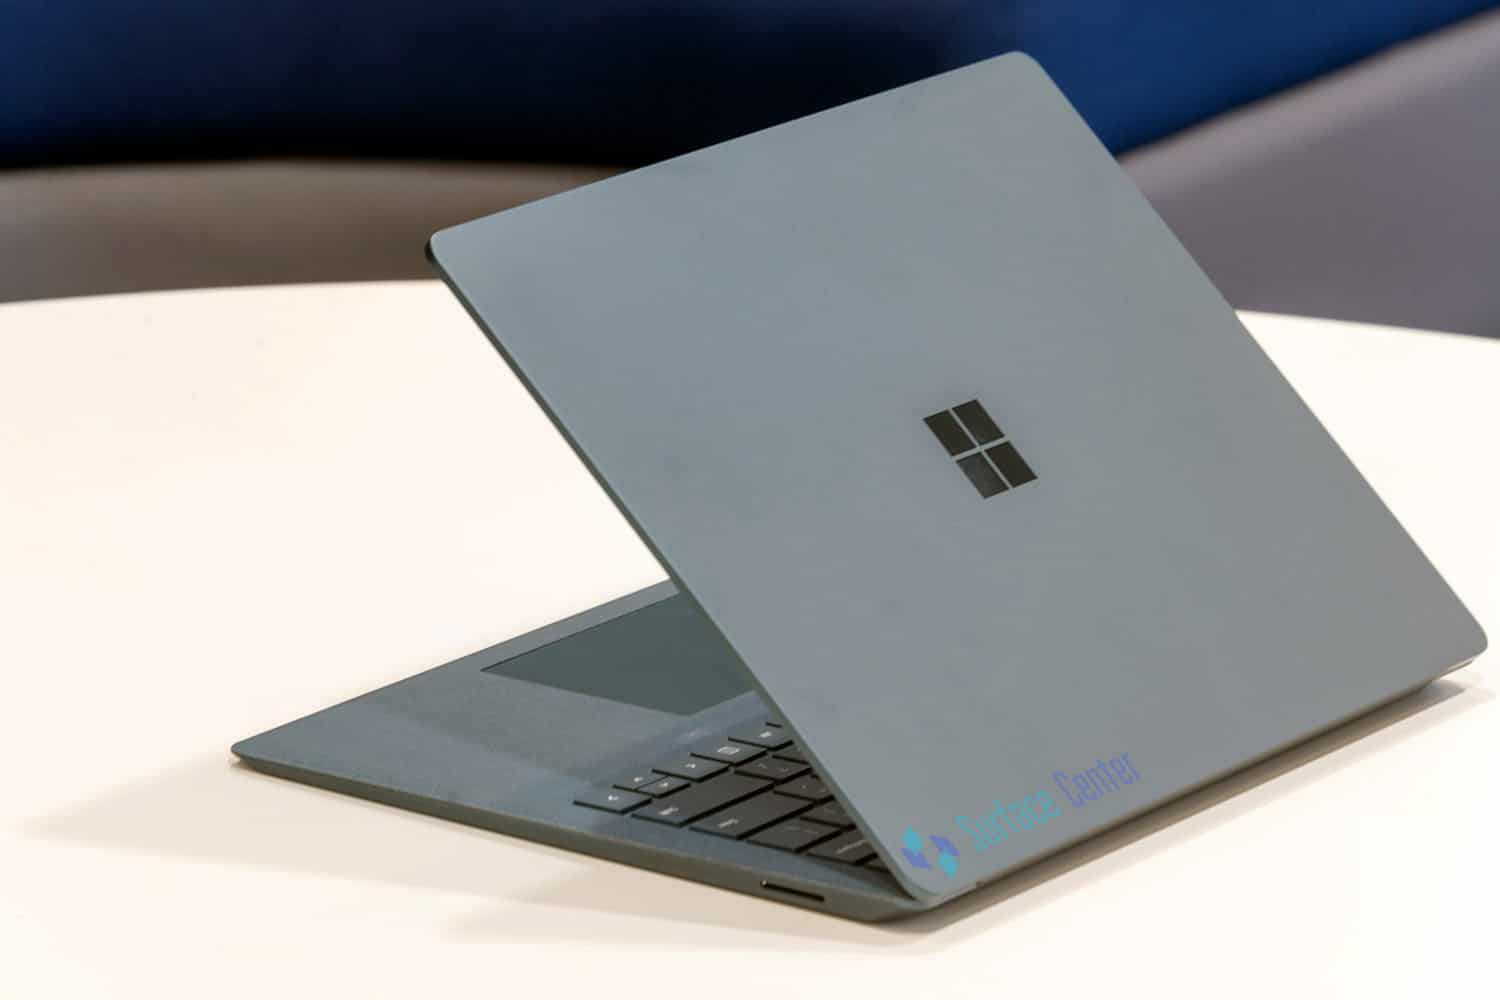 Đánh giá Surface Laptop 1: Thiết kế đơn giản nhưng mạnh mẽ, quý phái